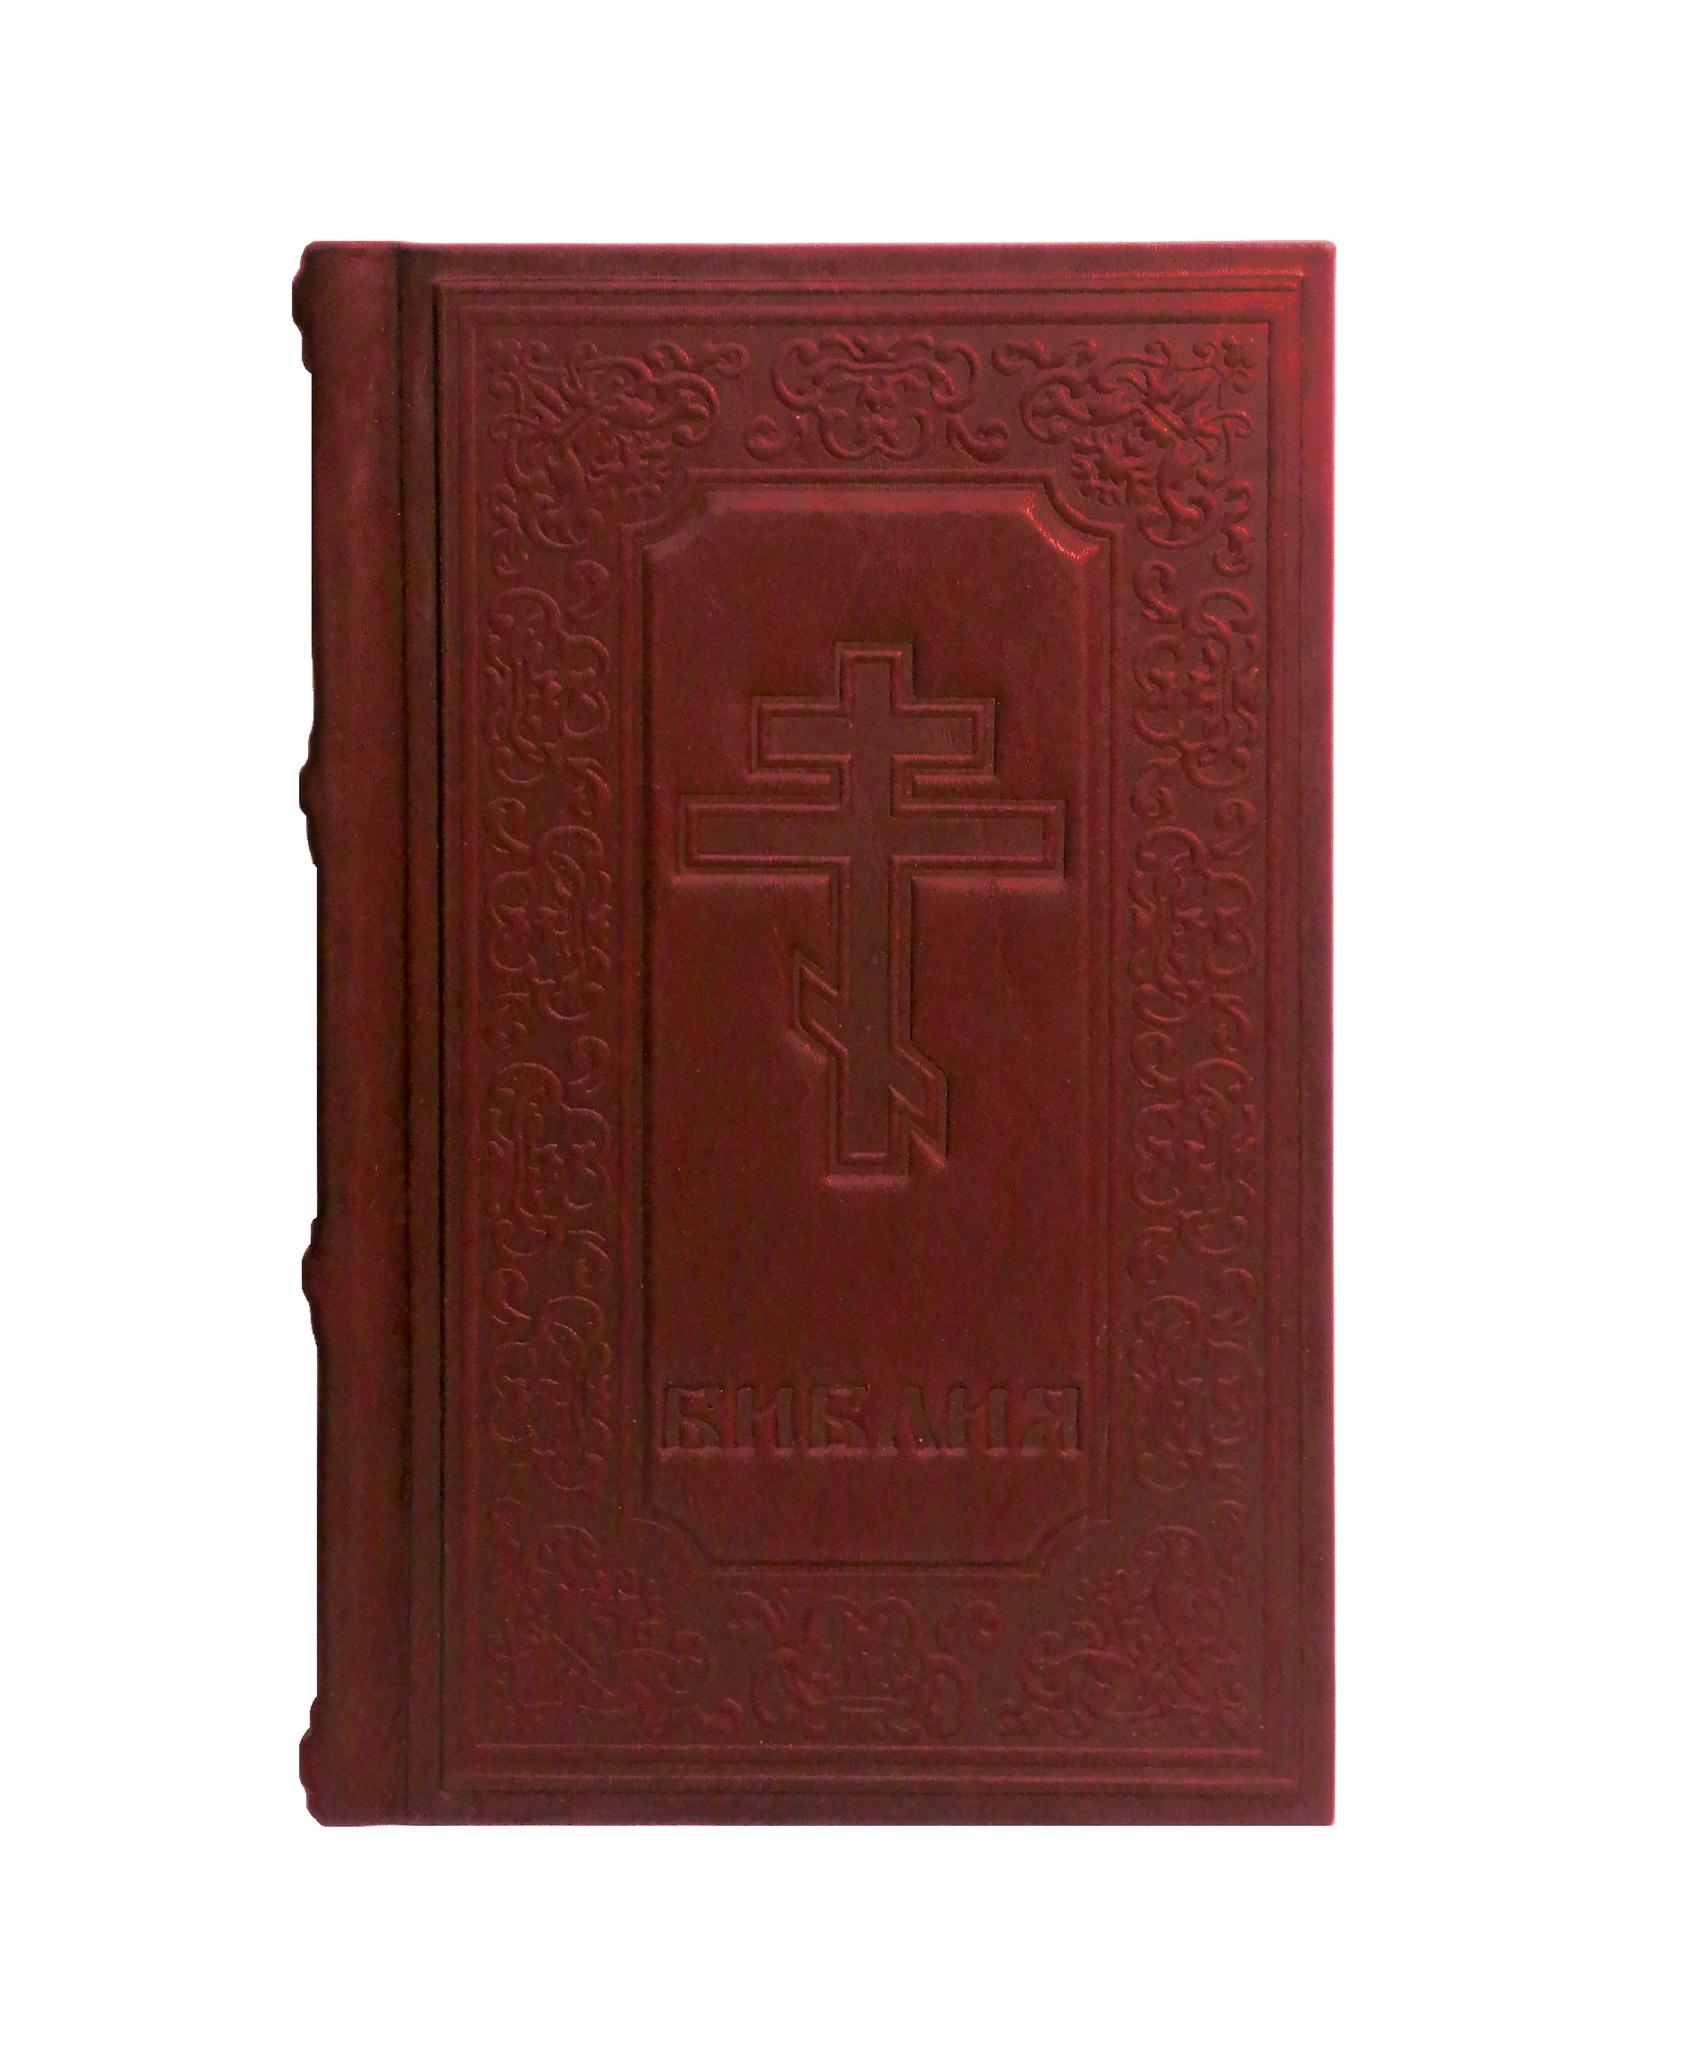 Картинка 014-07-07 Библия малая от интернет-магазина подарков "Макейс" в городе Москва